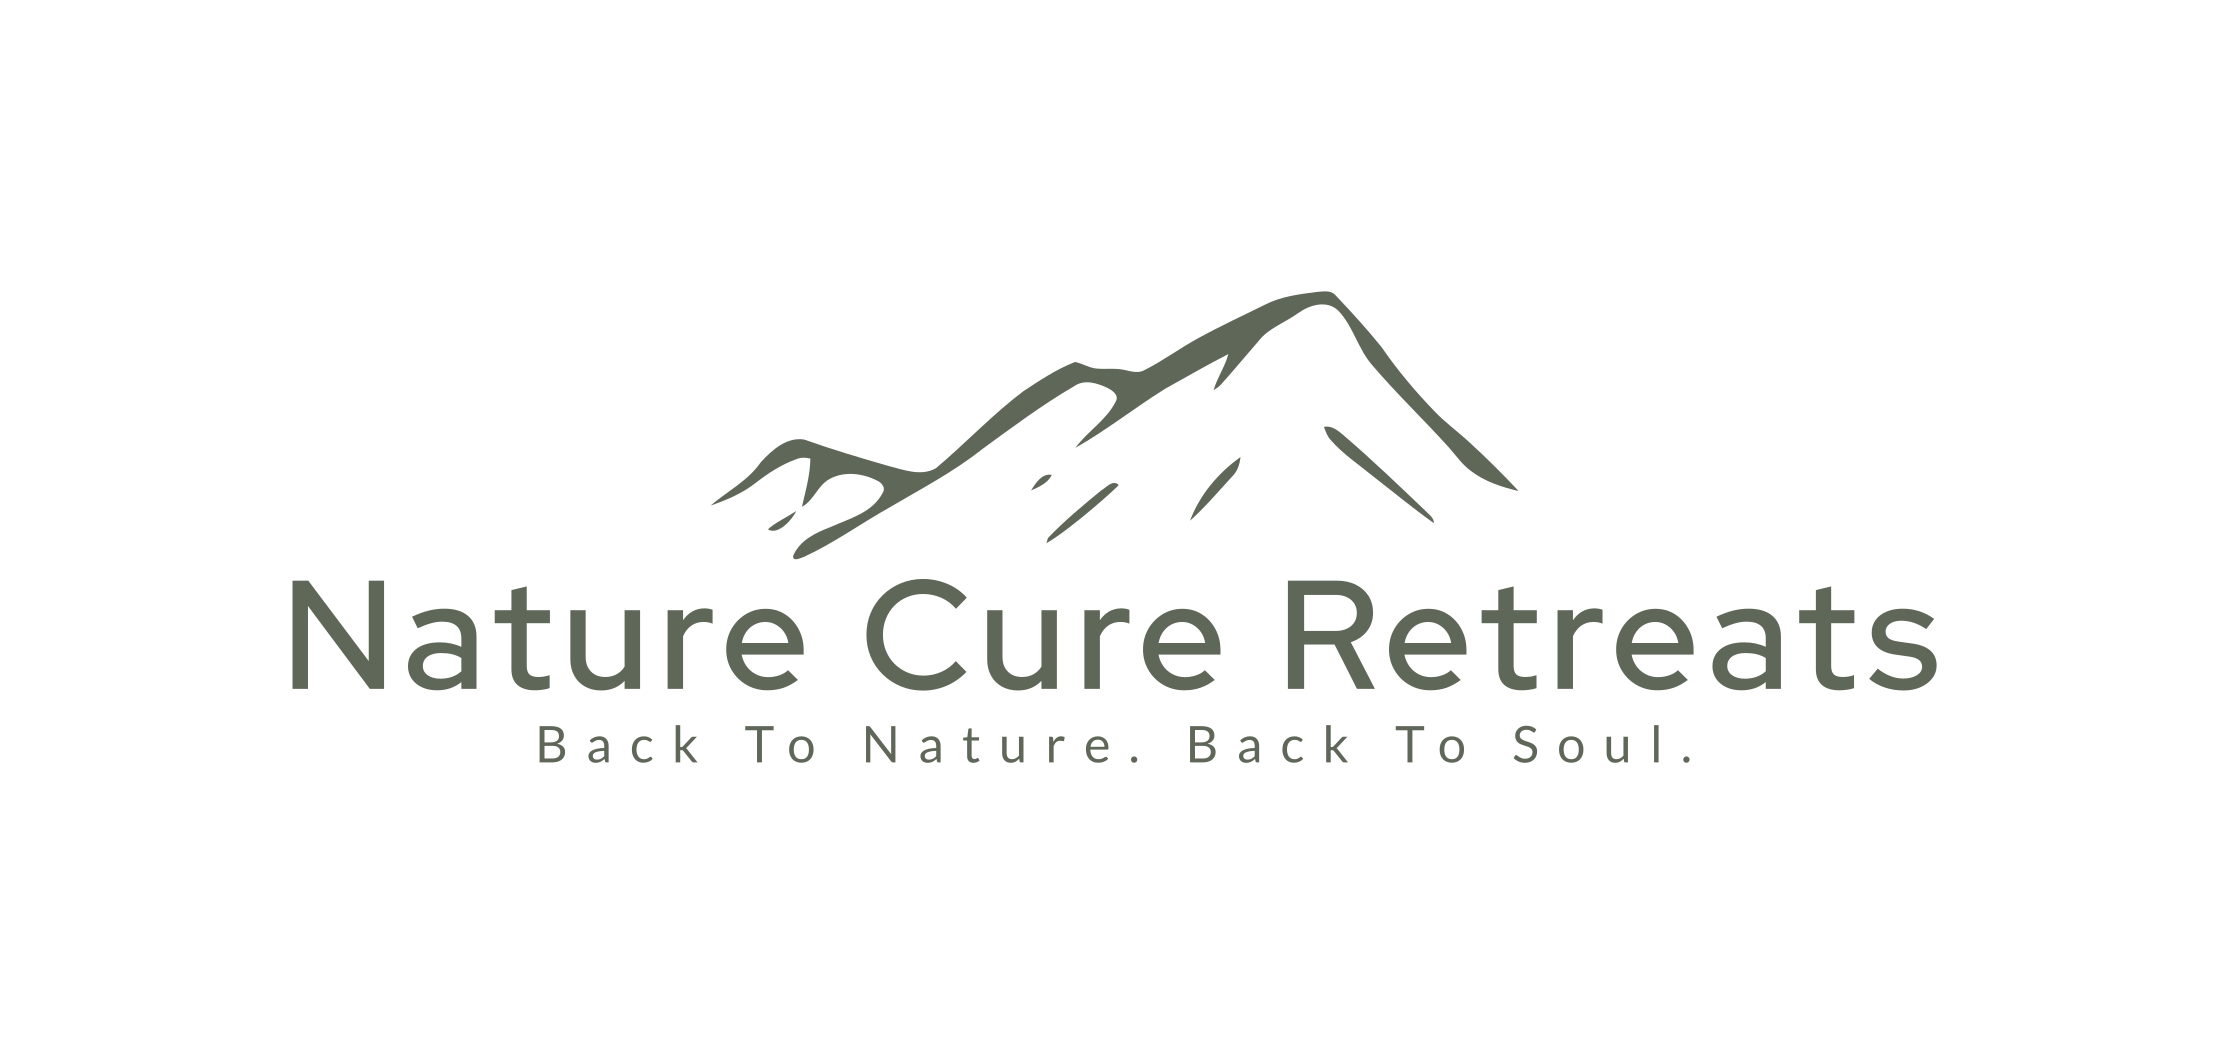 Nature Cure Retreats